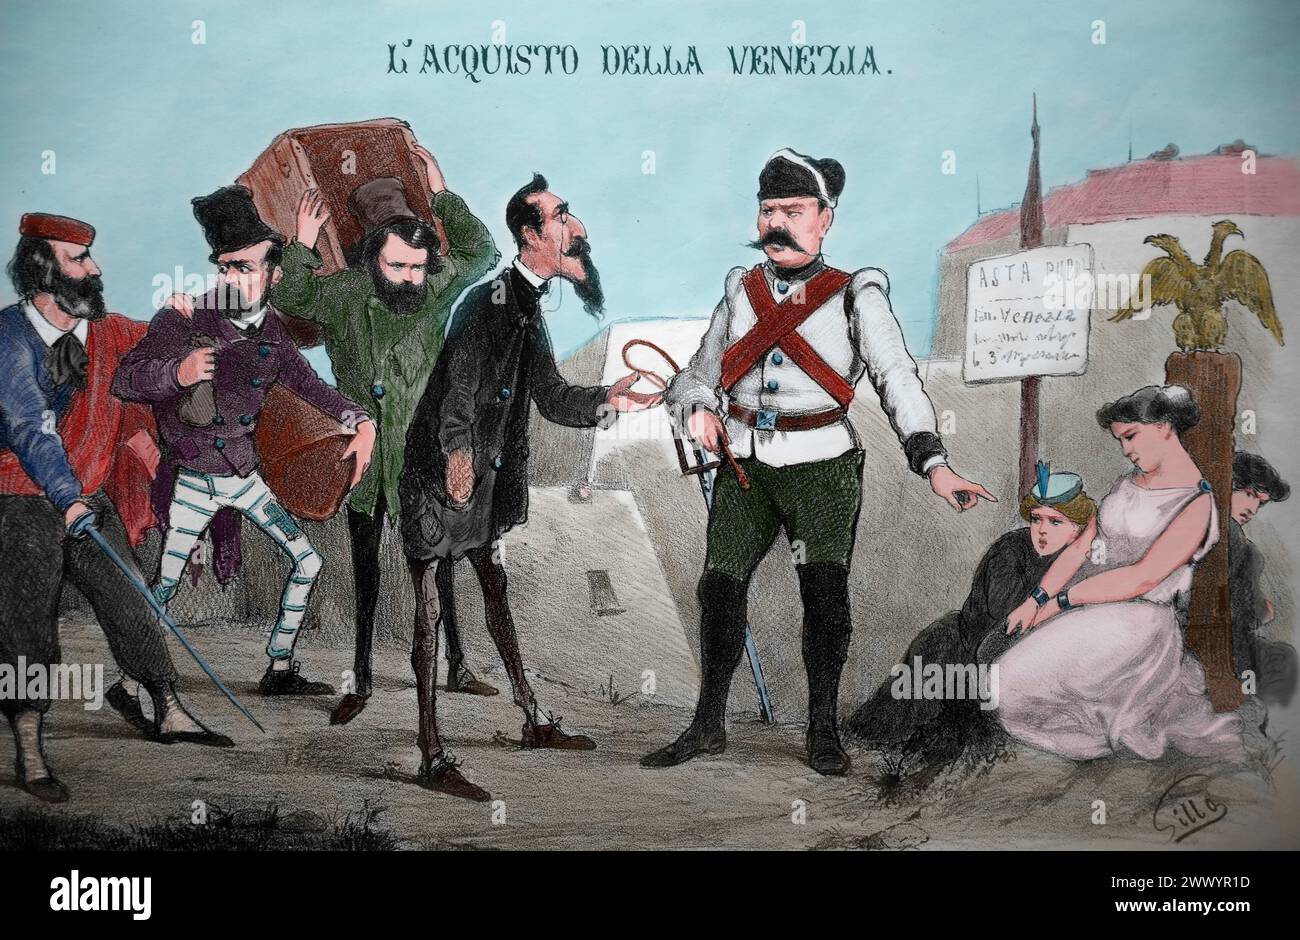 Risorgimento. Sátira política. Venecia todavía espera el freeedom. Litografía. 1865. Foto de stock